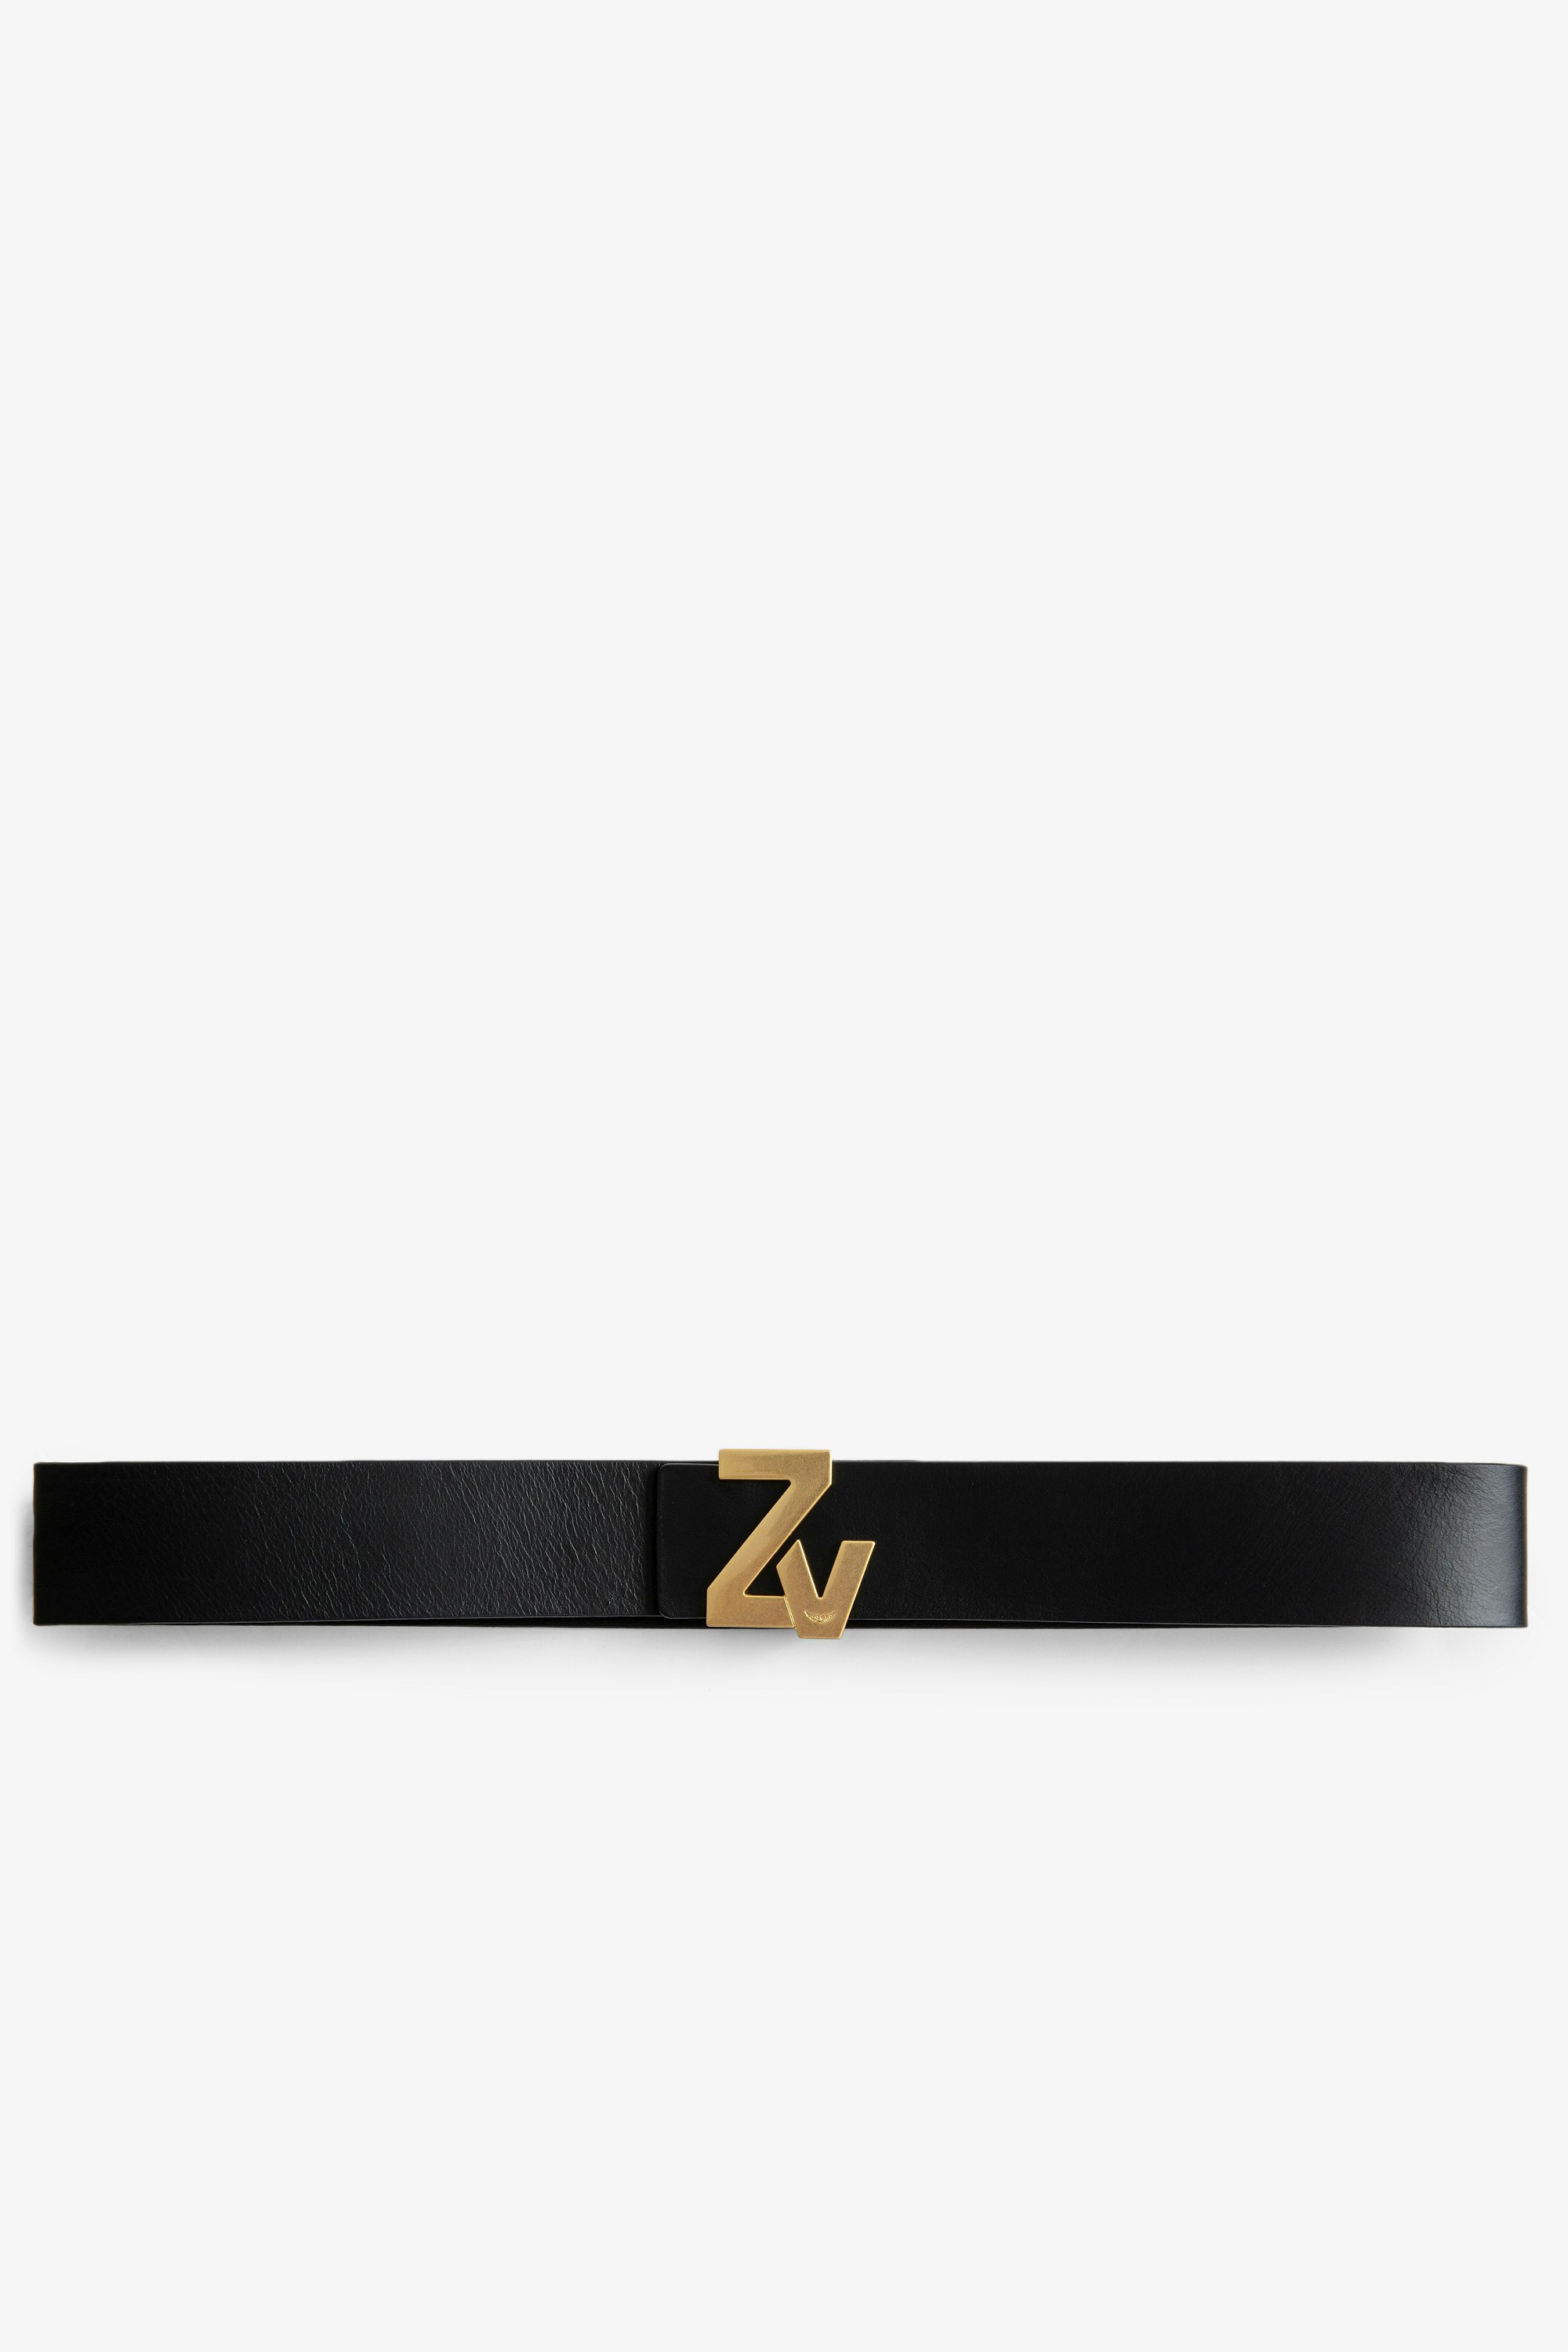 La Belt ZV Initiale Belt Leather Women’s ZV Initiale black leather belt